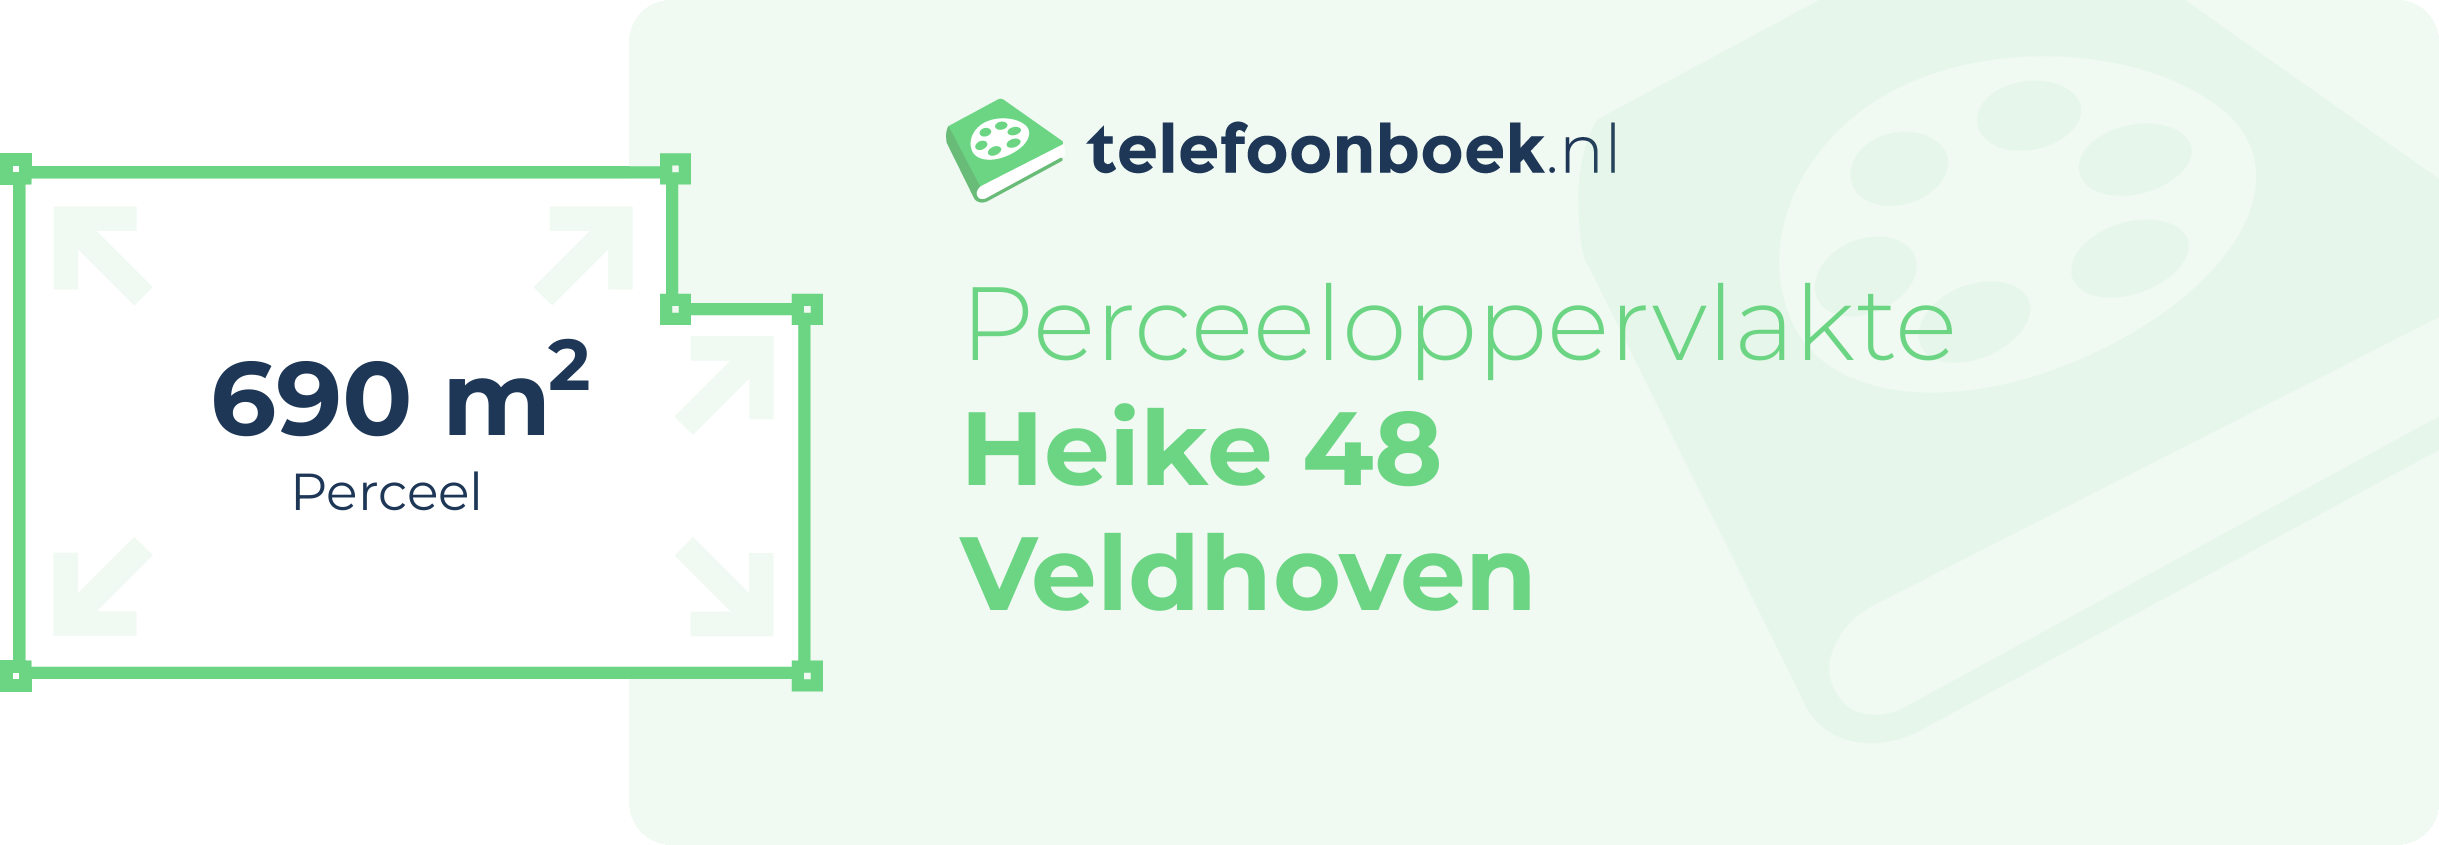 Perceeloppervlakte Heike 48 Veldhoven